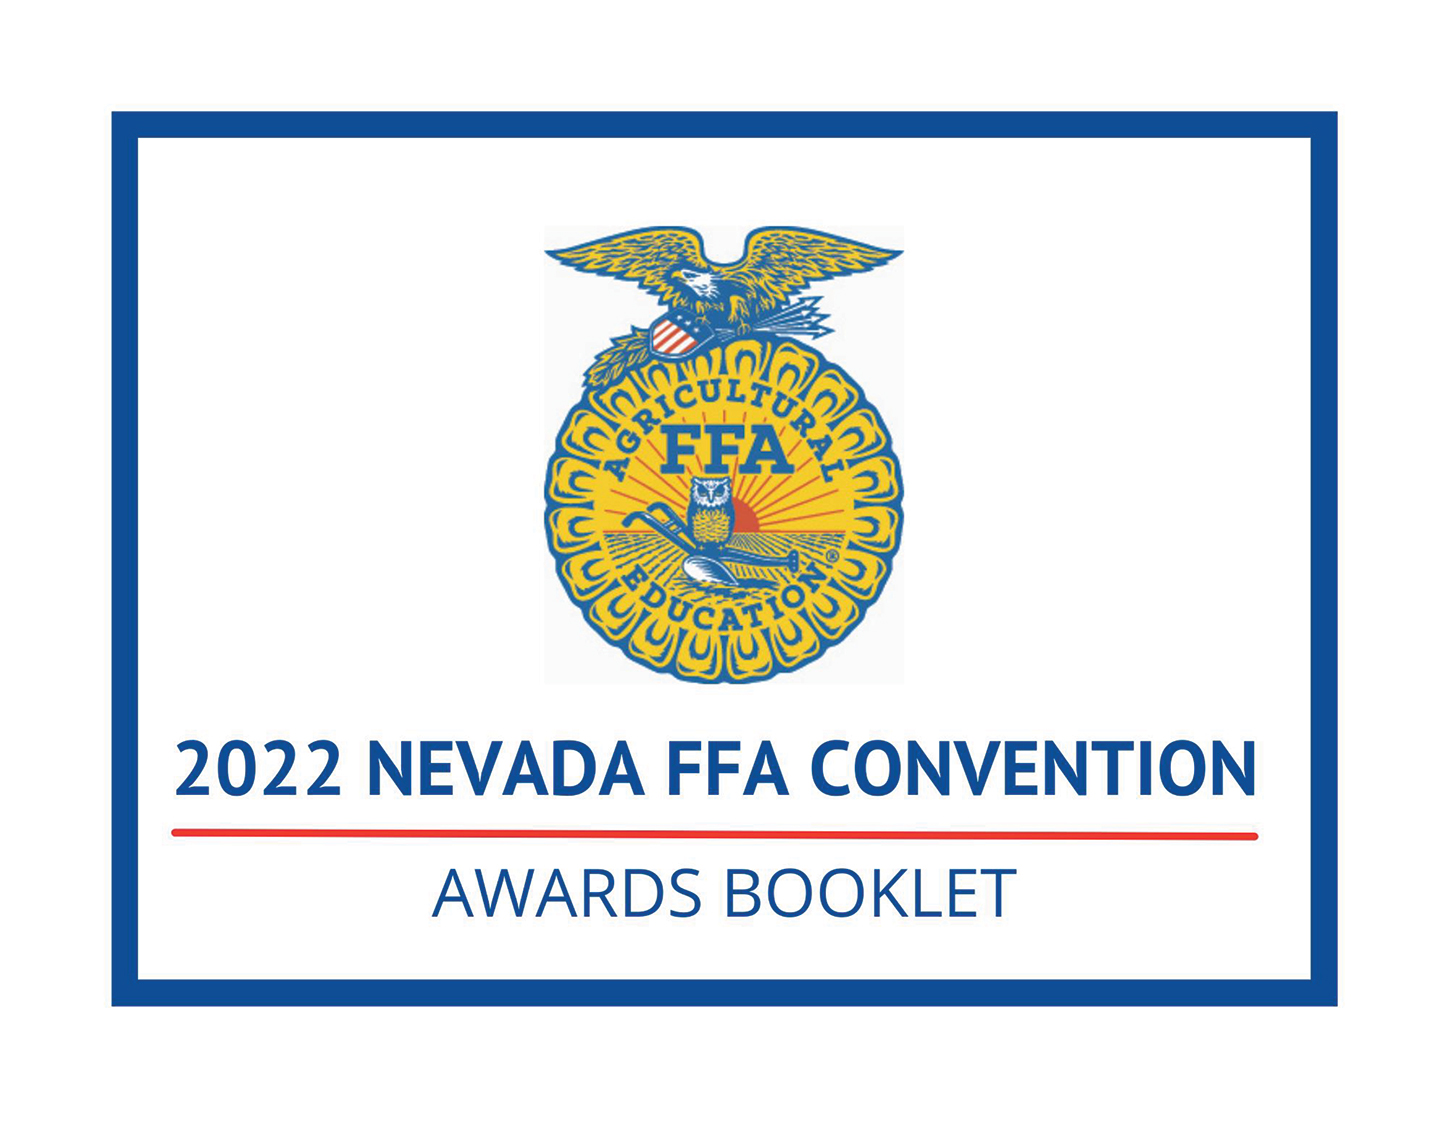 2022 Nevada FFA Convention Booklet The Progressive Rancher